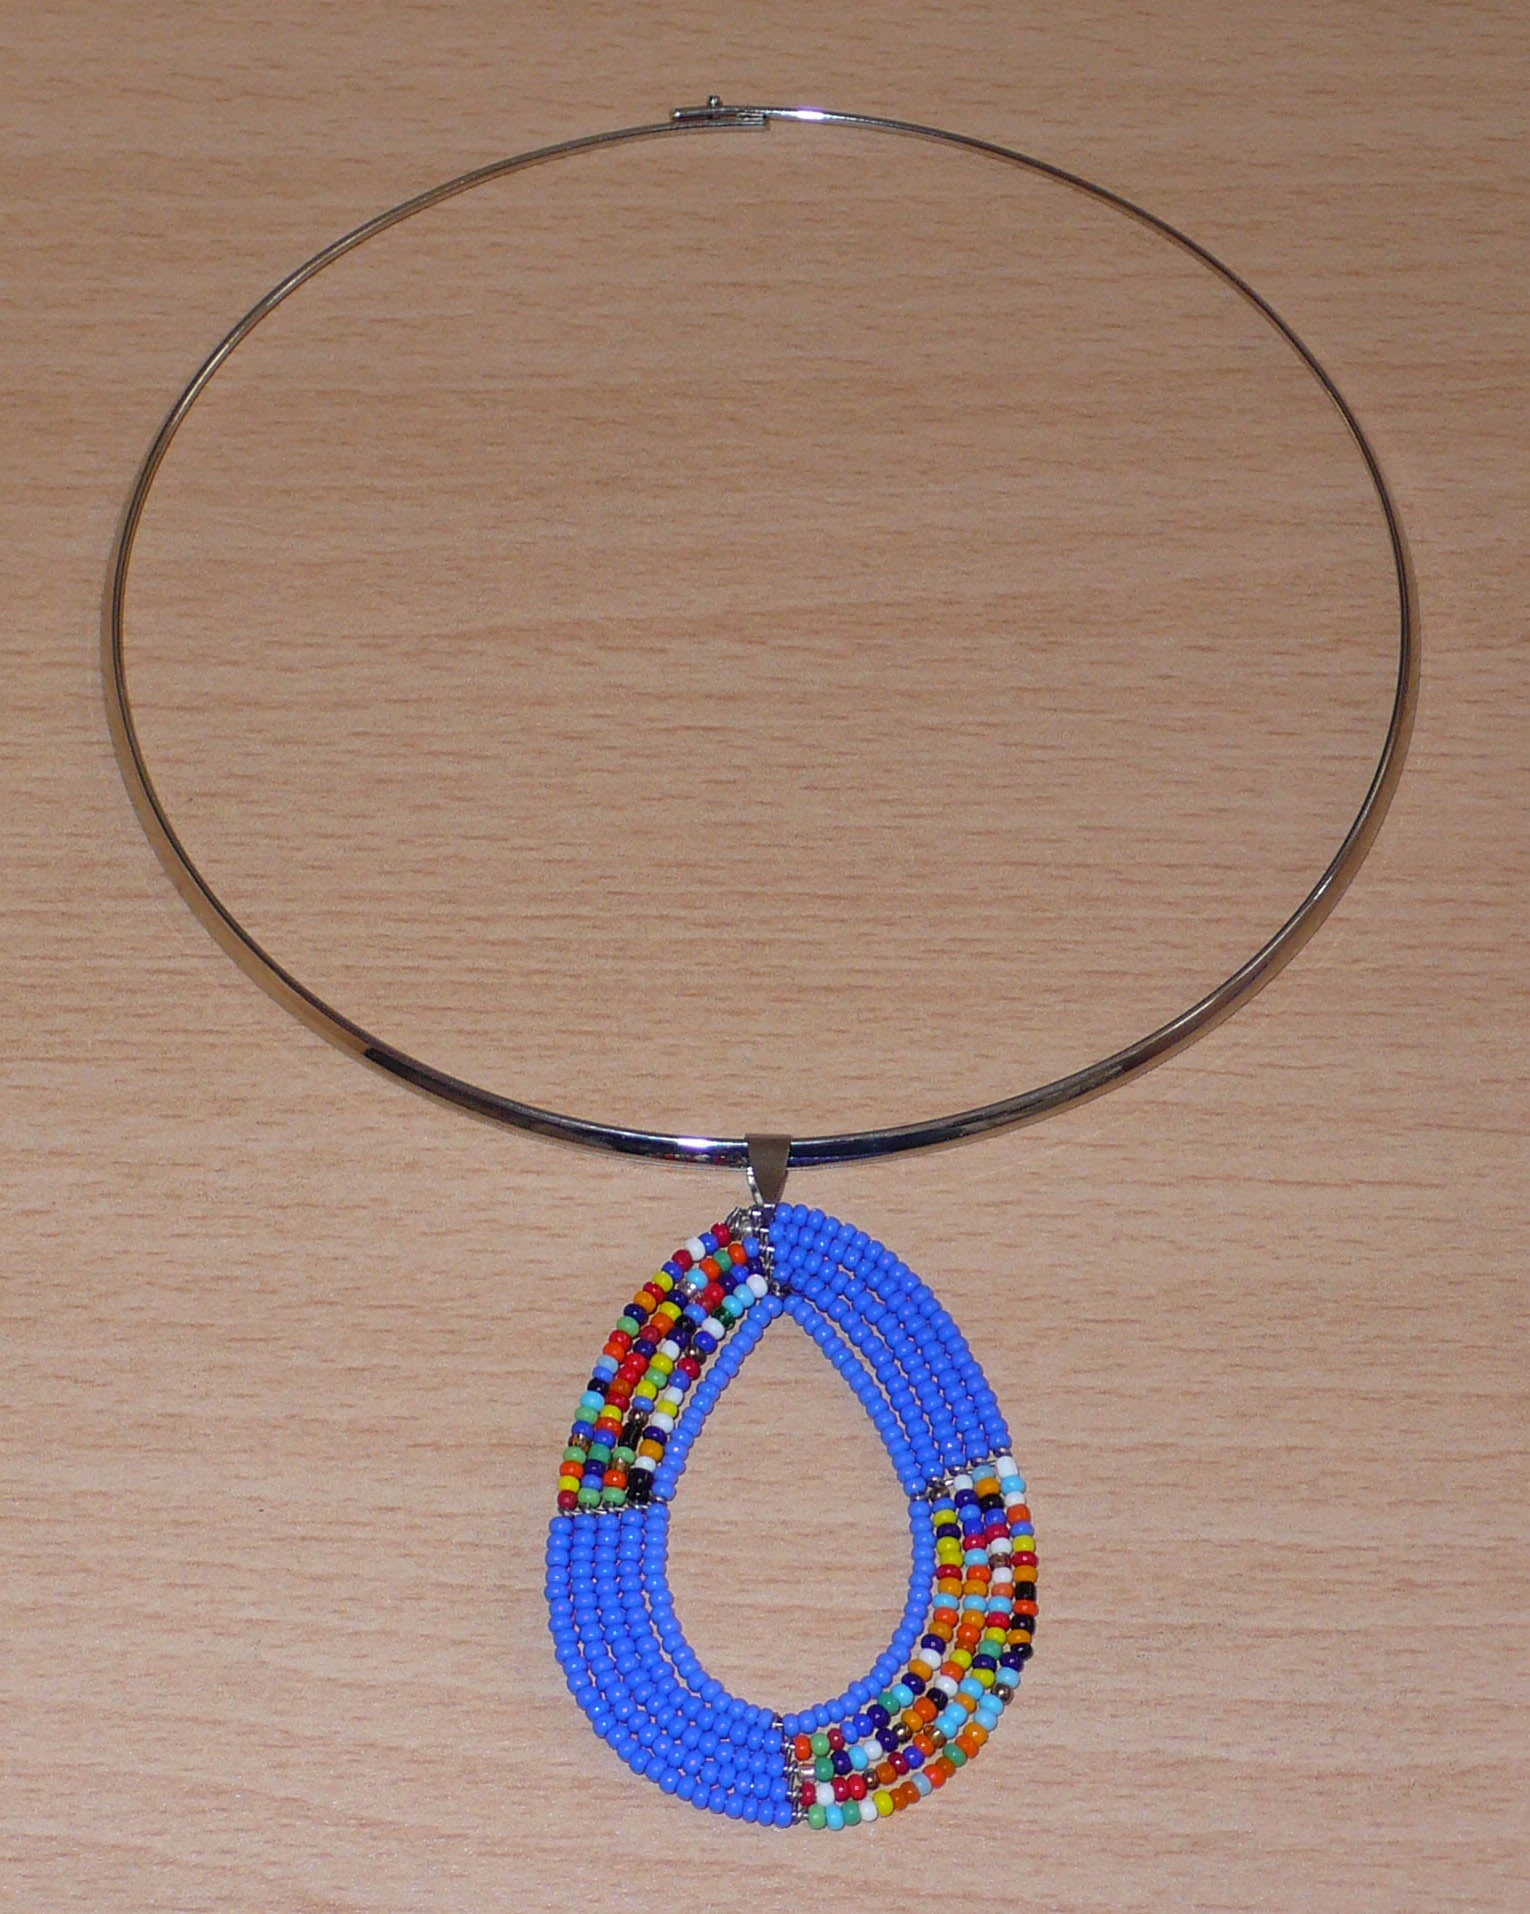 Collier bleu composé d'un ras-de-cou en laiton argenté orné d'un pendentif fait de perles de rocaille bleues et multicolores enfilées sur cinq rangs de fils de fer montés en forme de goutte. Ce collier mesure 19,5 cm de long (de la nuque au bas du pendentif), la cironférence du ras-de-cou est de 42,5 cm et 13,5 cm de diamètre ; le pendentif mesure 6 cm de long et 4,5 cm de large. Timeless Fineries